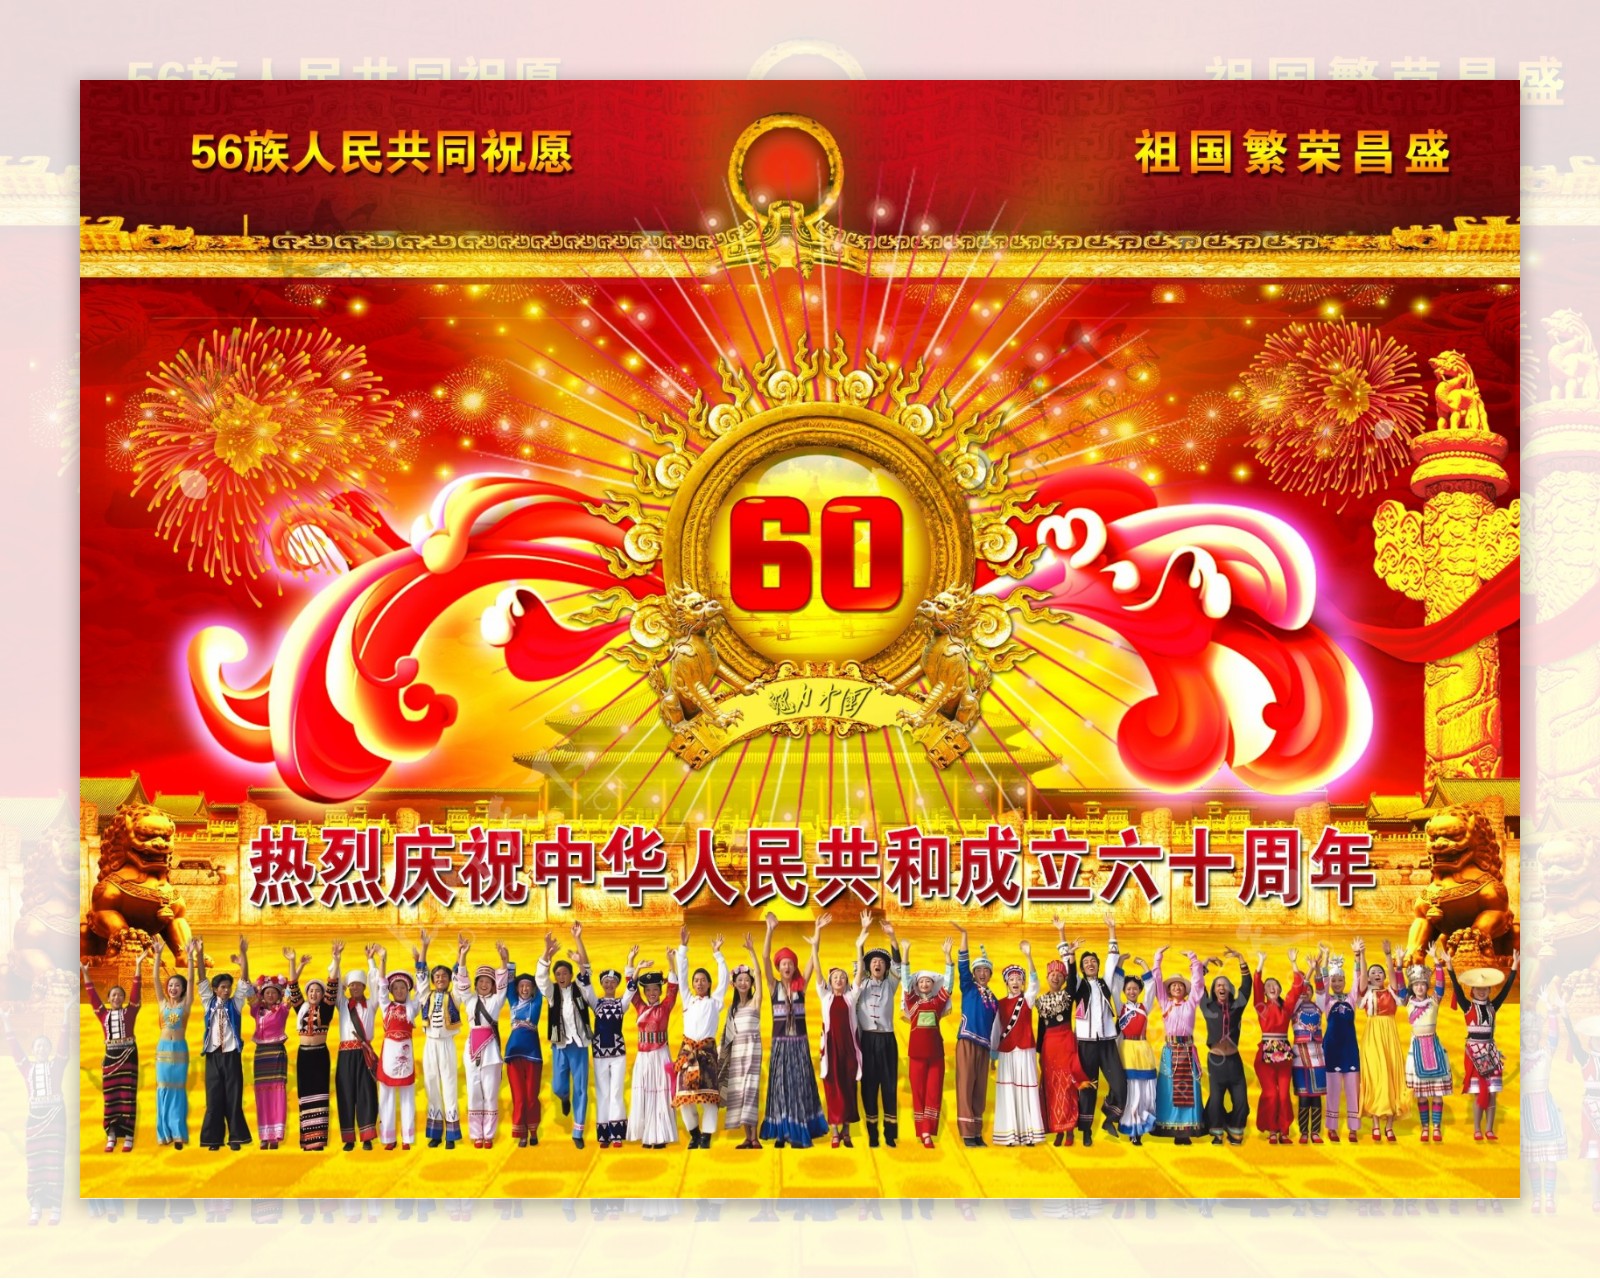 国庆60周年背景广告图片